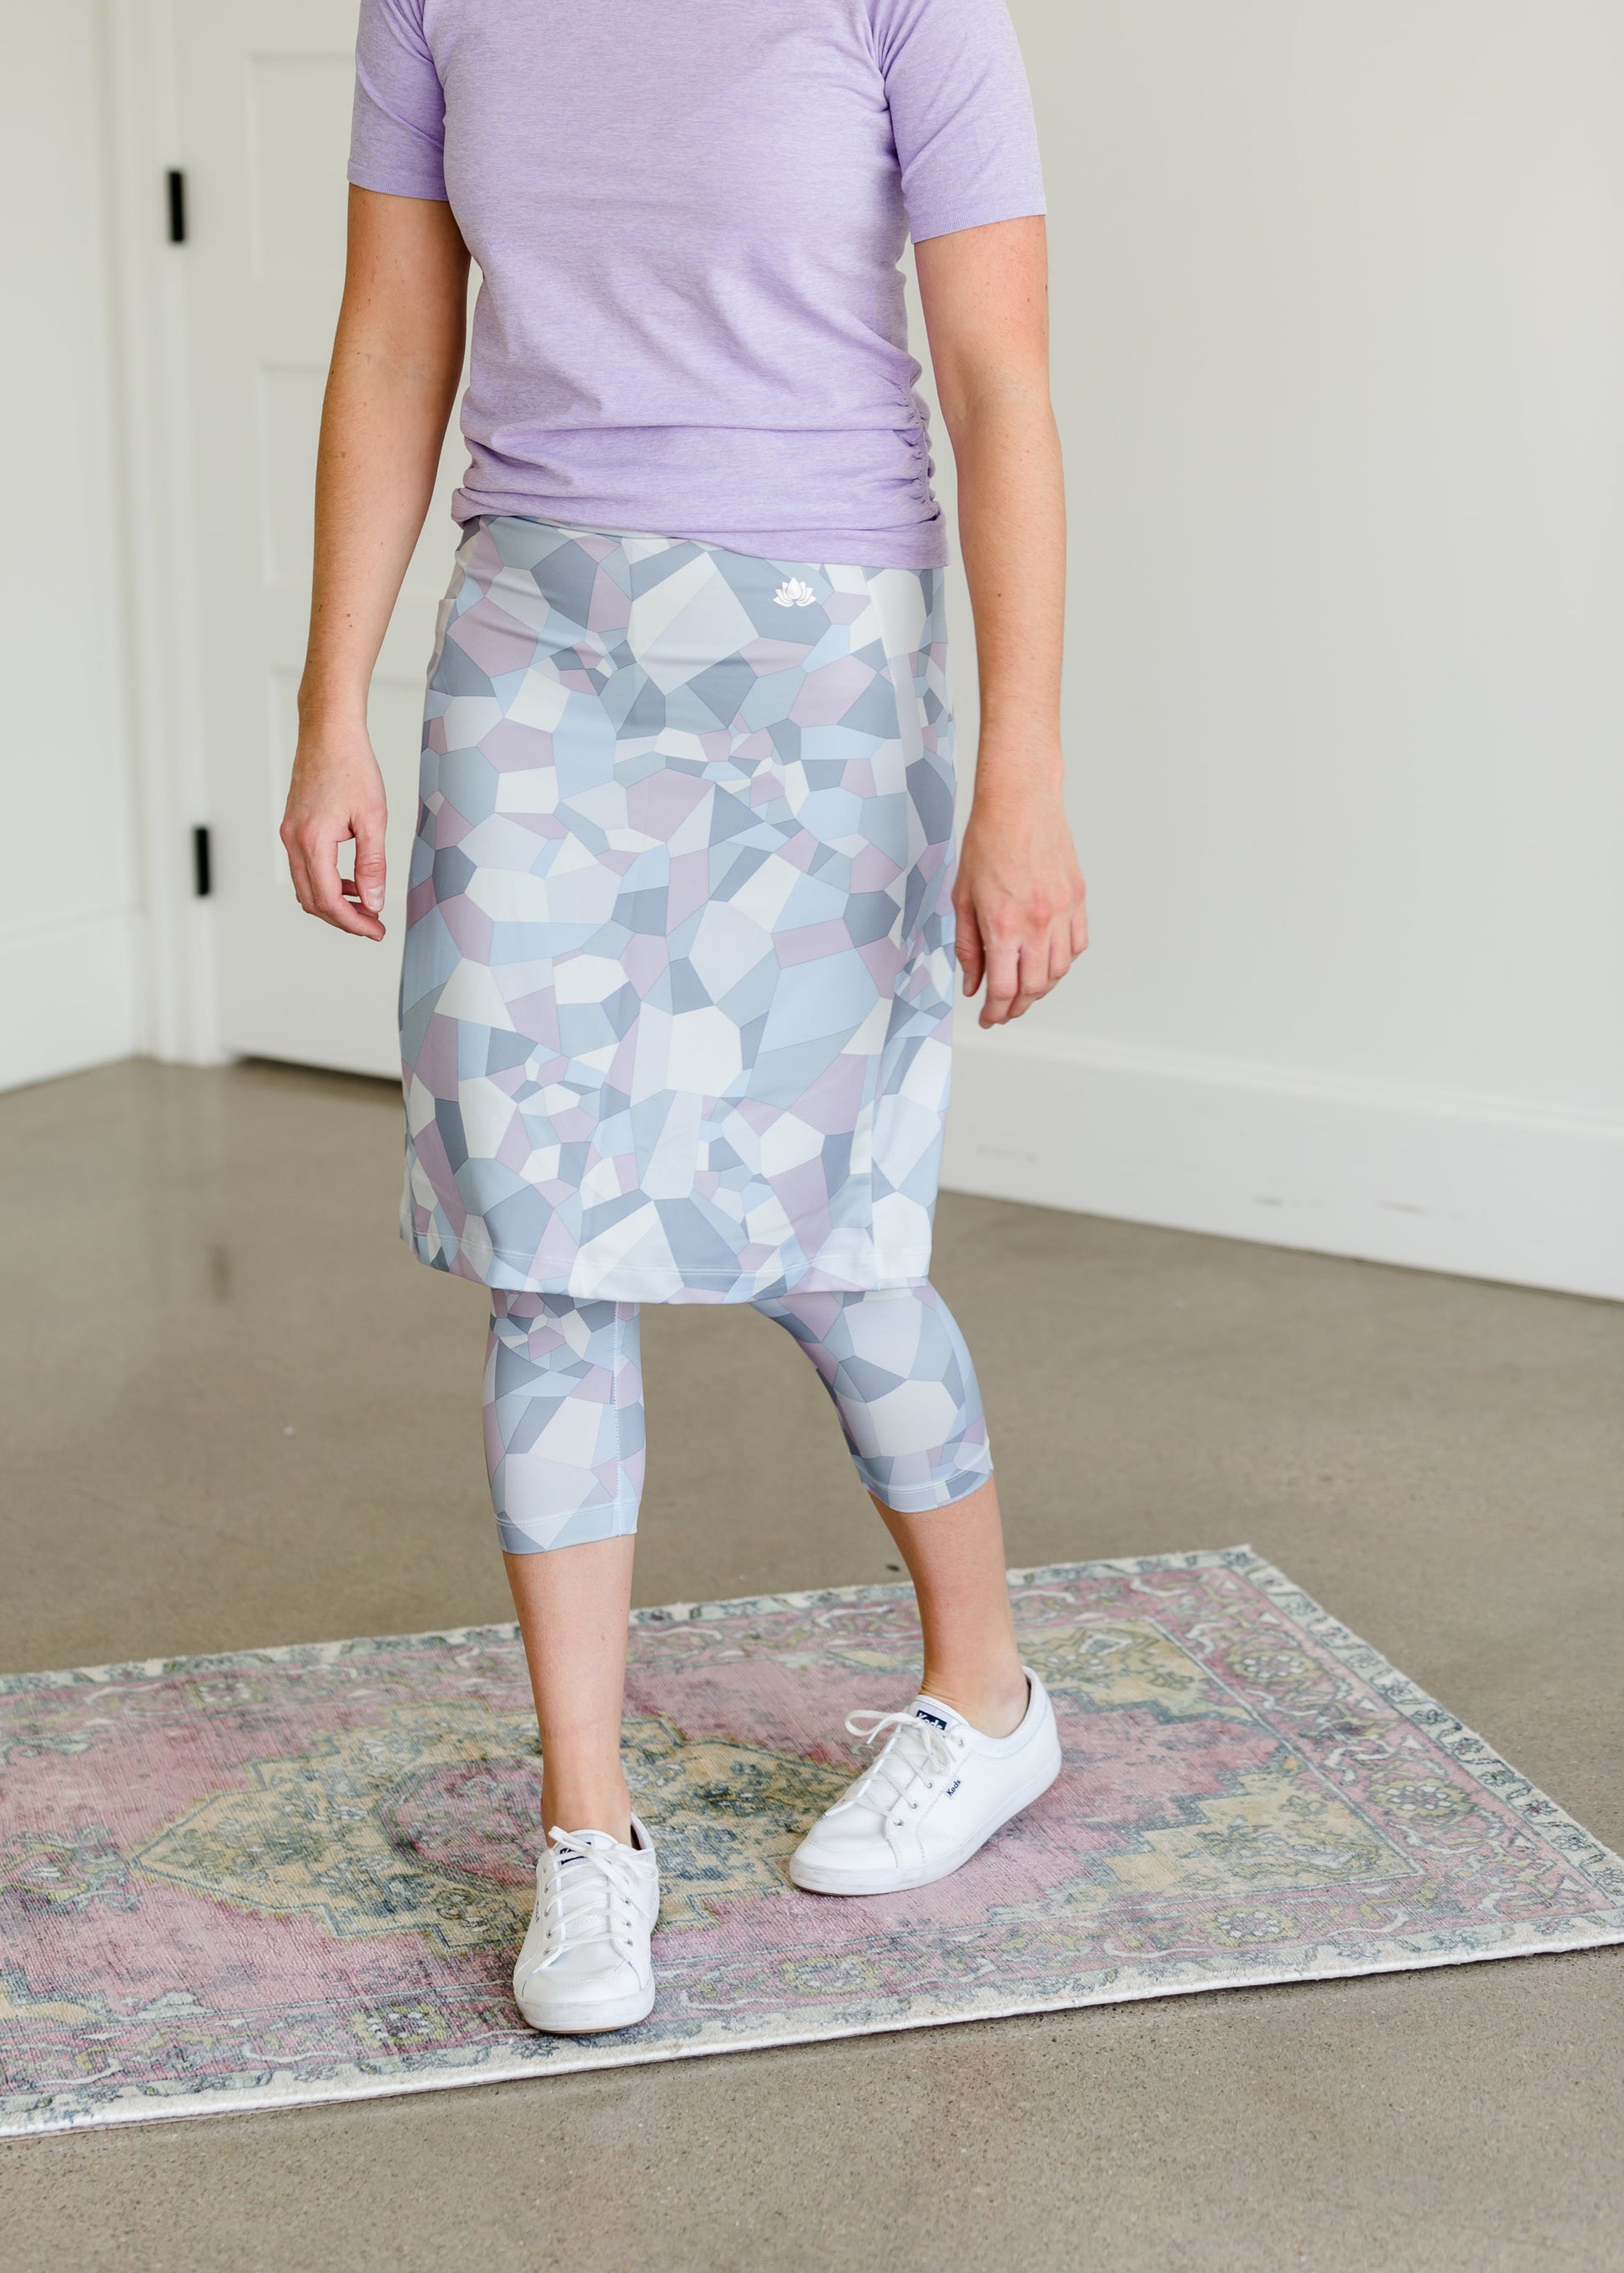 Snoga FIT Shattered Print Sport Skirt - FINAL SALE Activewear